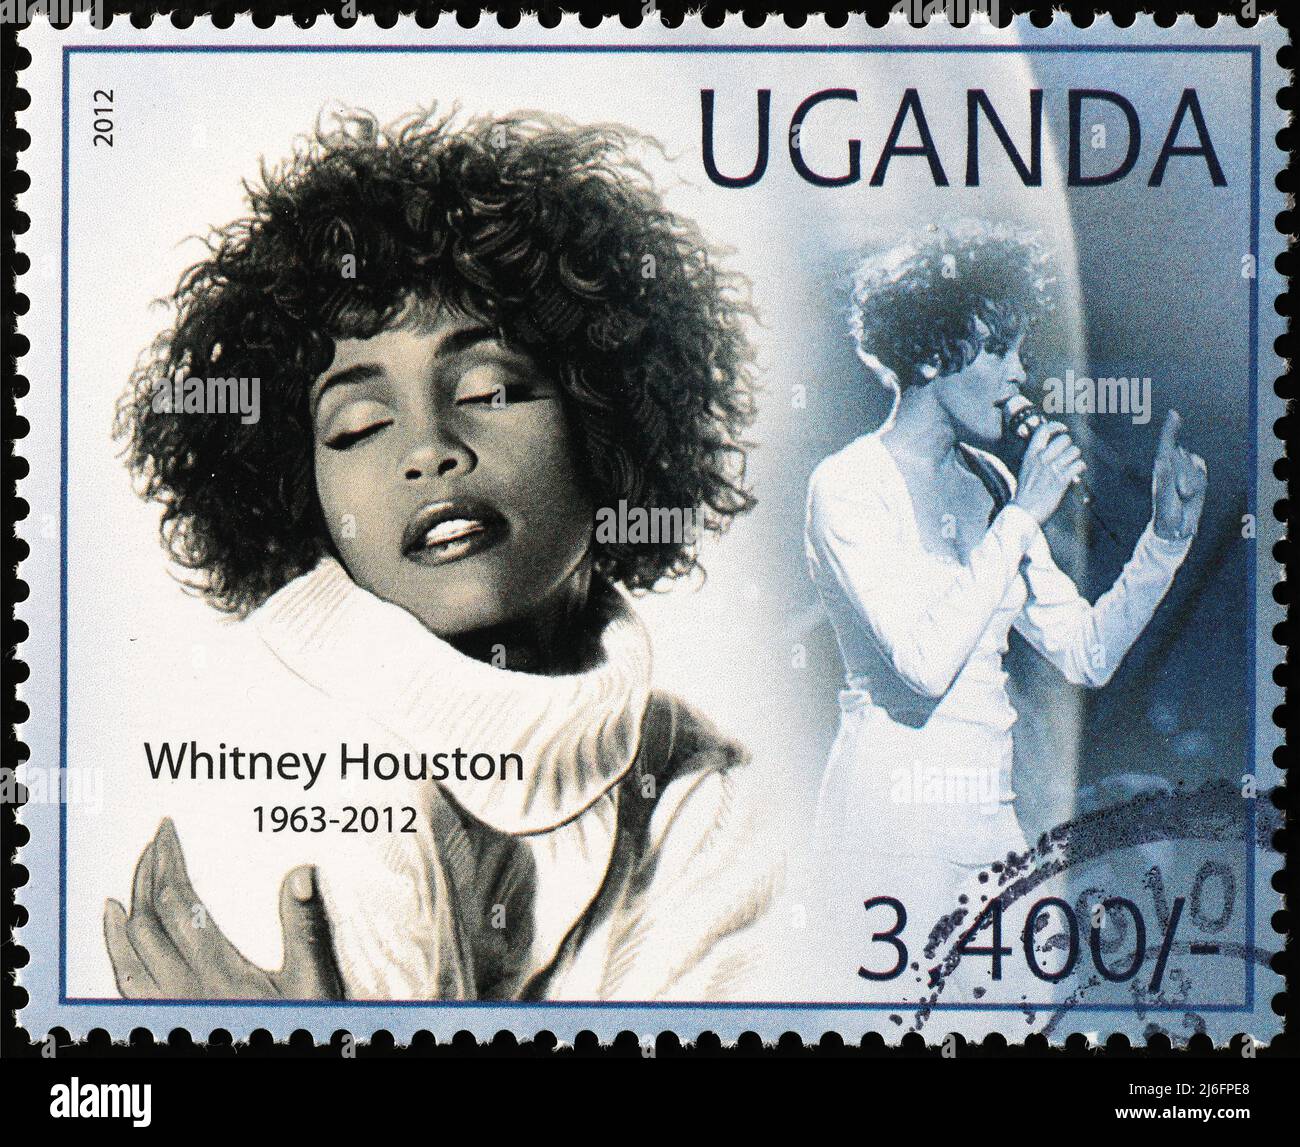 Portraits de Whitney Houston sur timbre-poste Banque D'Images